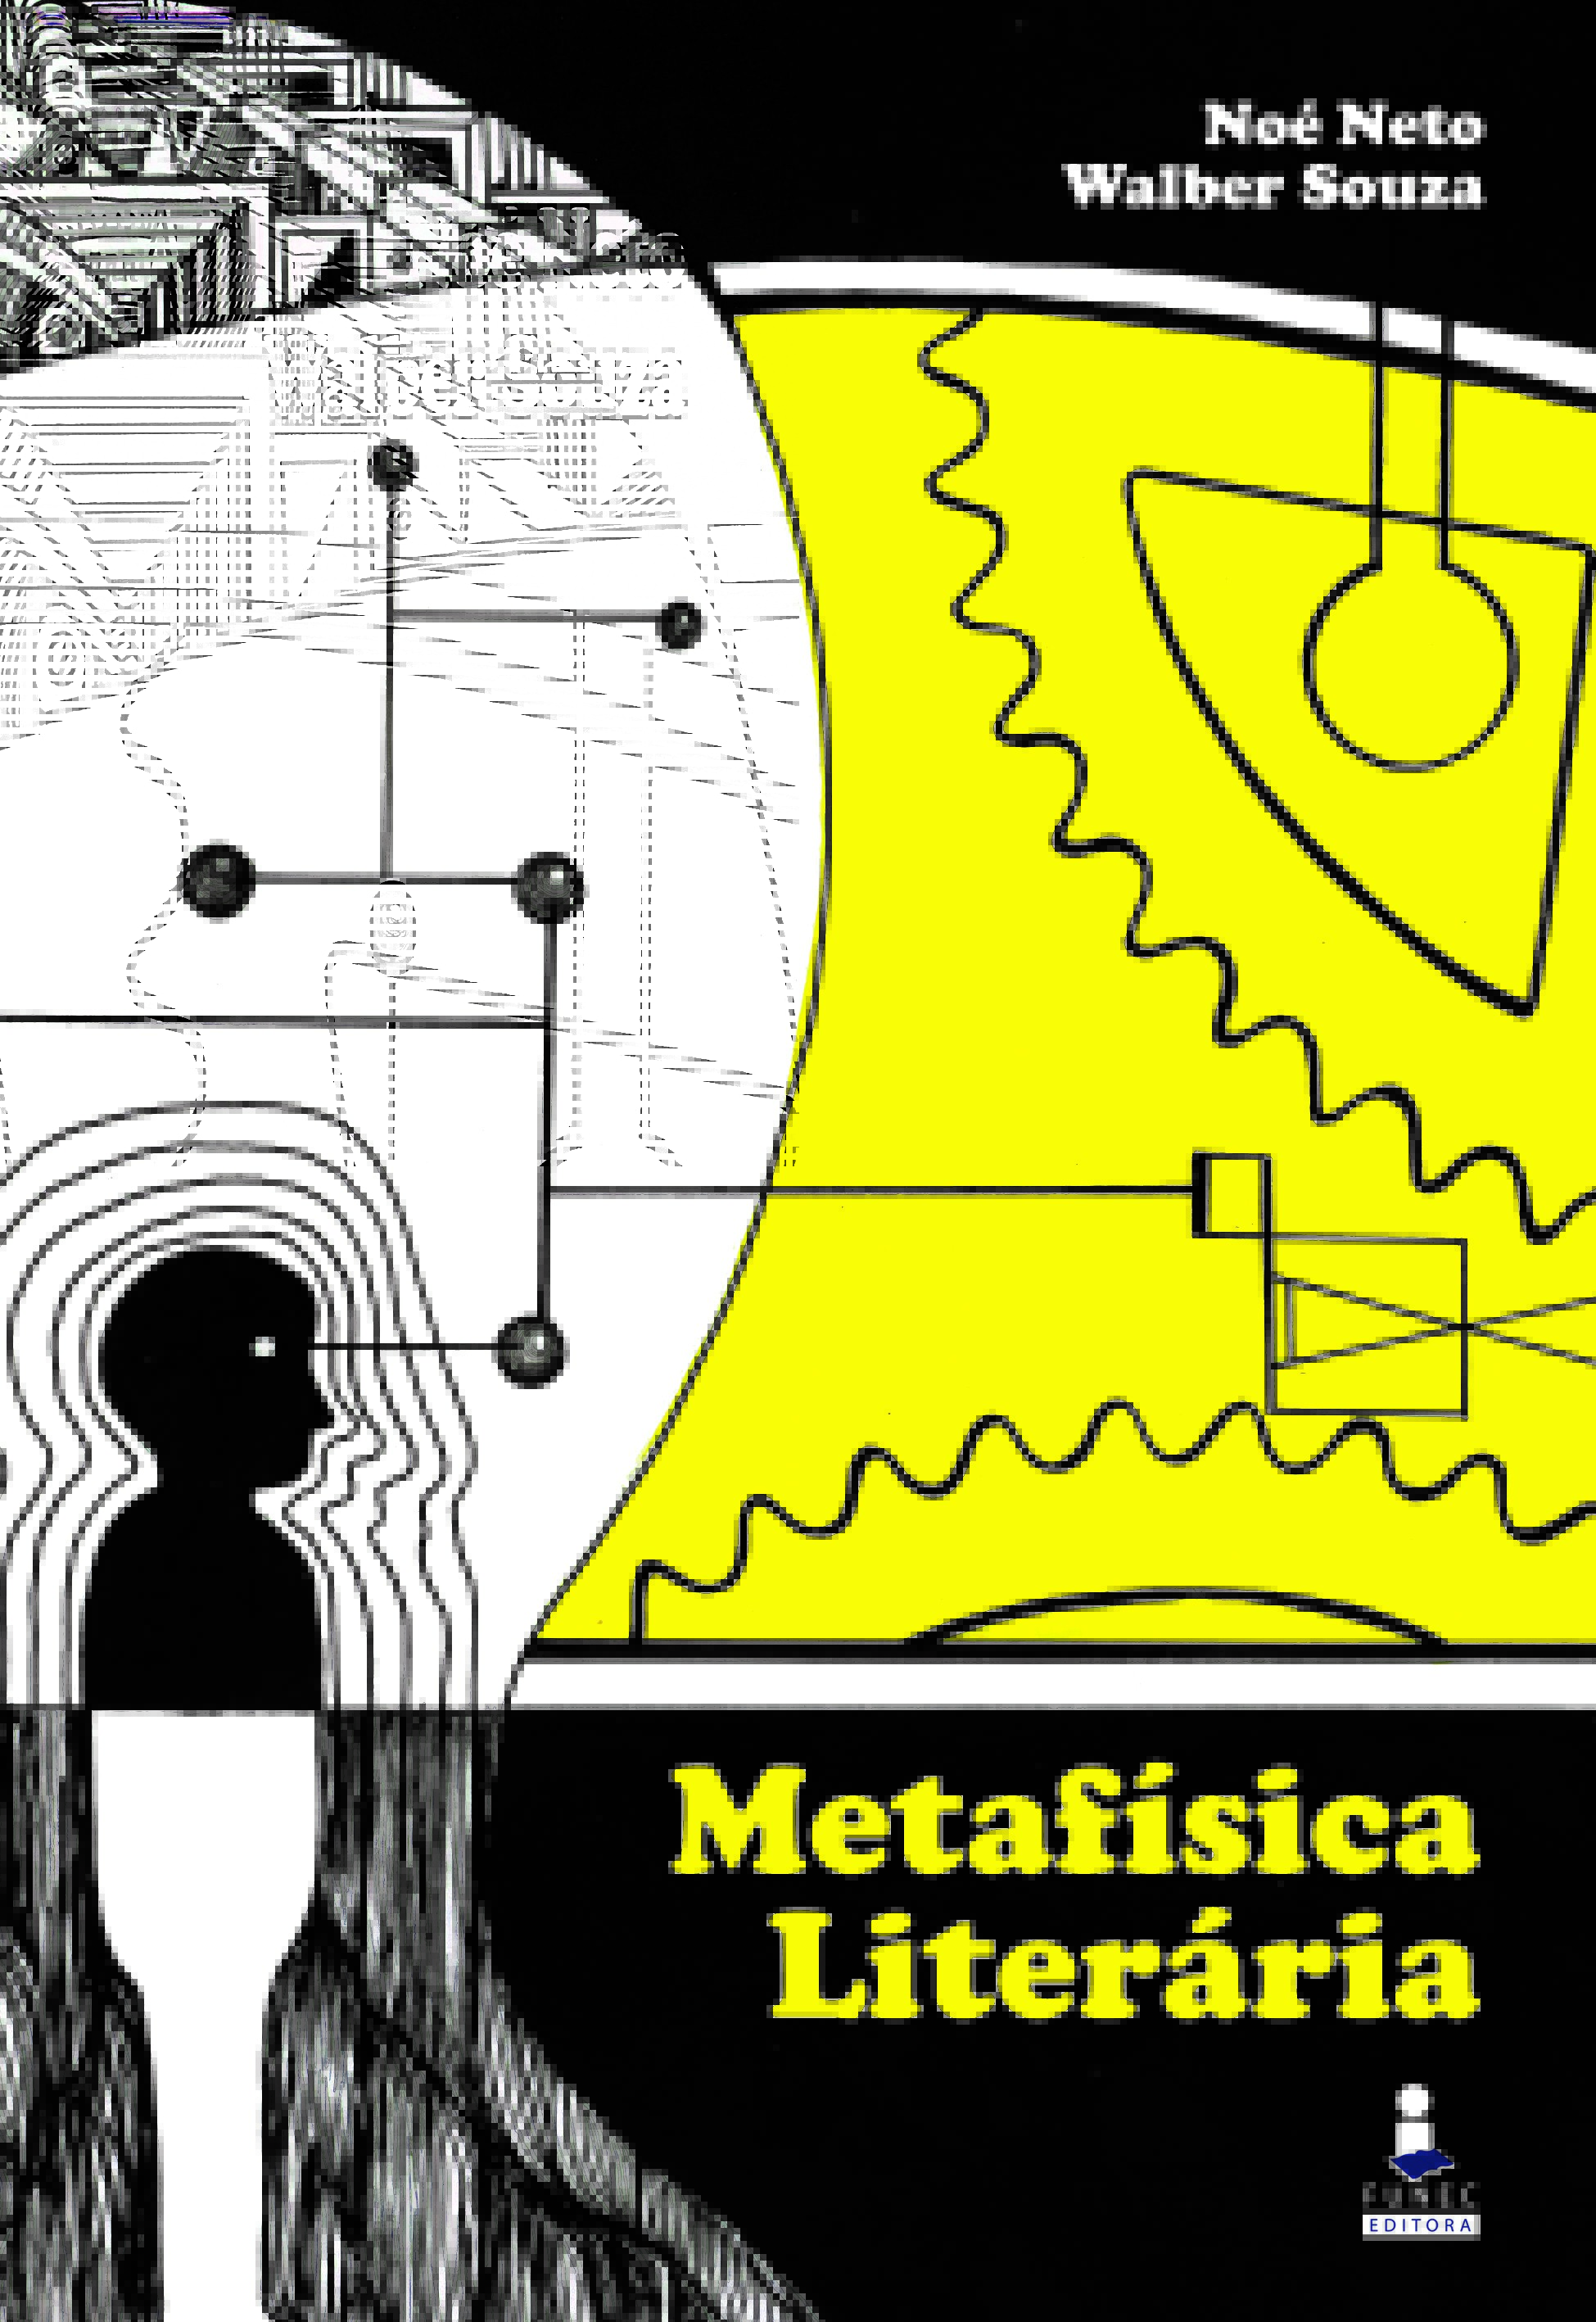 Metafísica Literária: Walber Gonçalves e Noé Neto trazem reflexão em novo livro